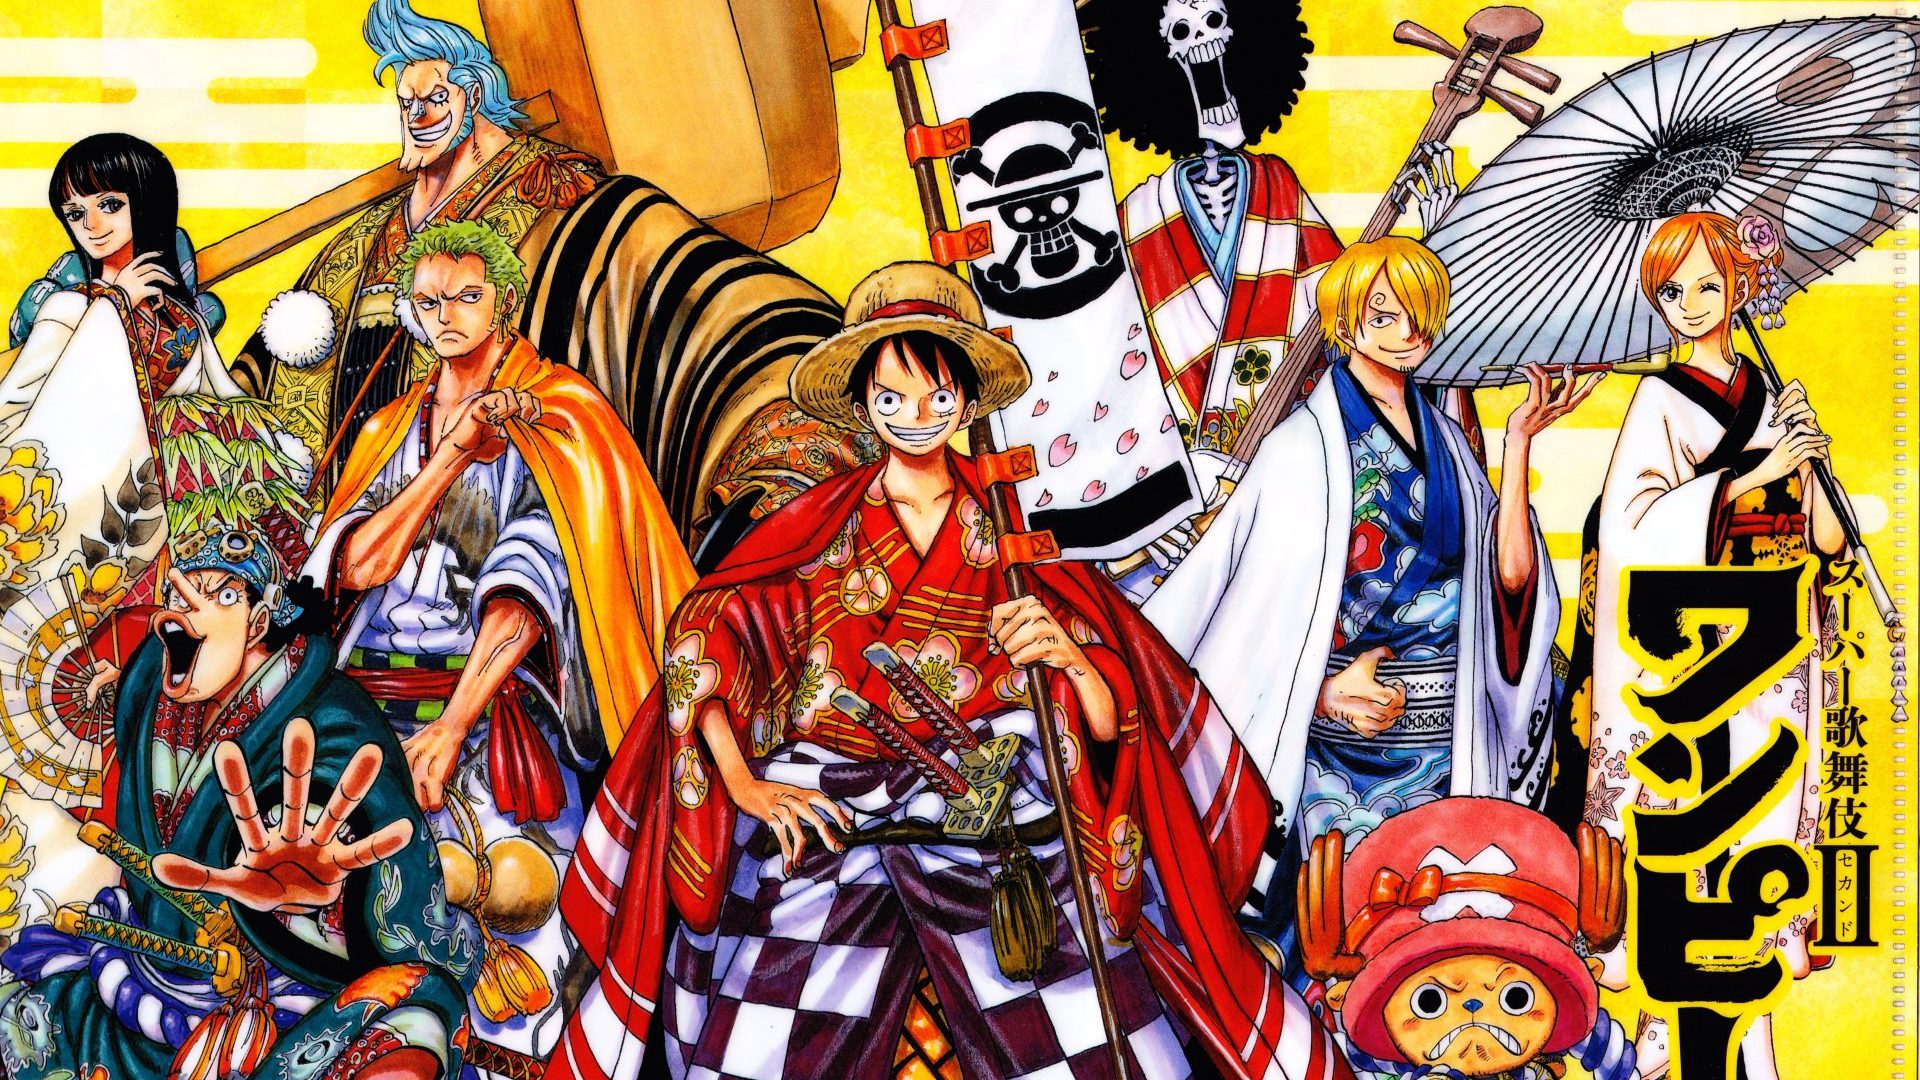 Nếu bạn muốn trải nghiệm một thế giới khác xa, tham gia truyền thống manga/anime của Nhật Bản. Hãy xem những hình ảnh đầy màu sắc và sống động, nơi bạn có thể tìm thấy rất nhiều nhân vật đáng yêu và cốt truyện đầy kịch tính.